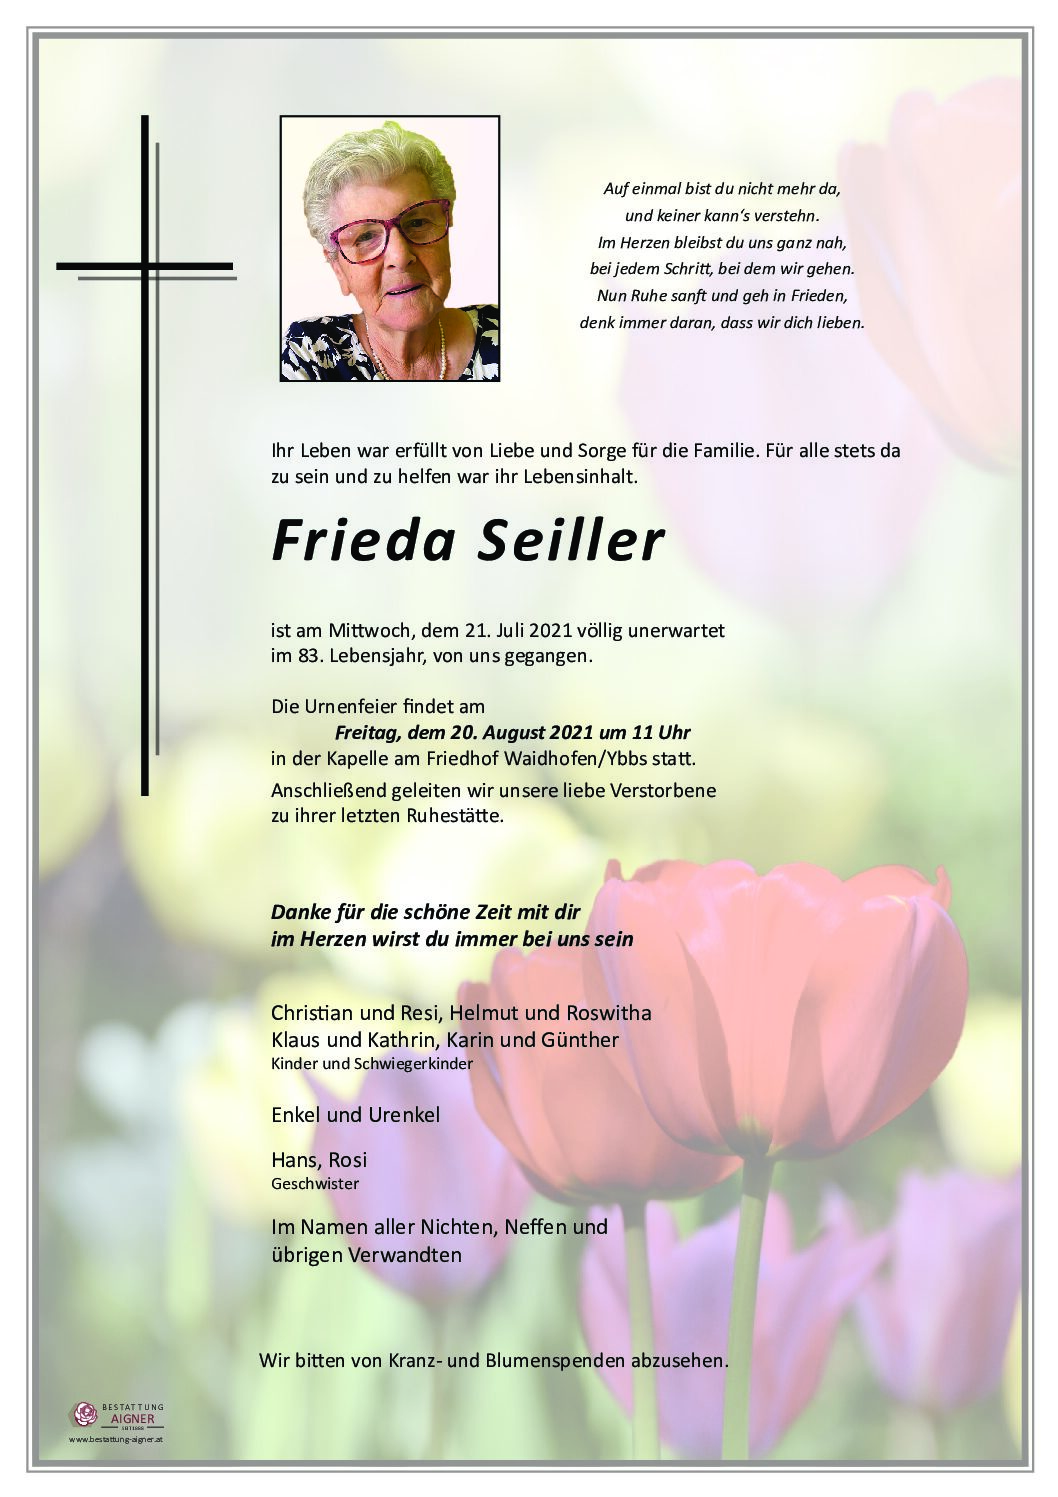 Frieda Seiller